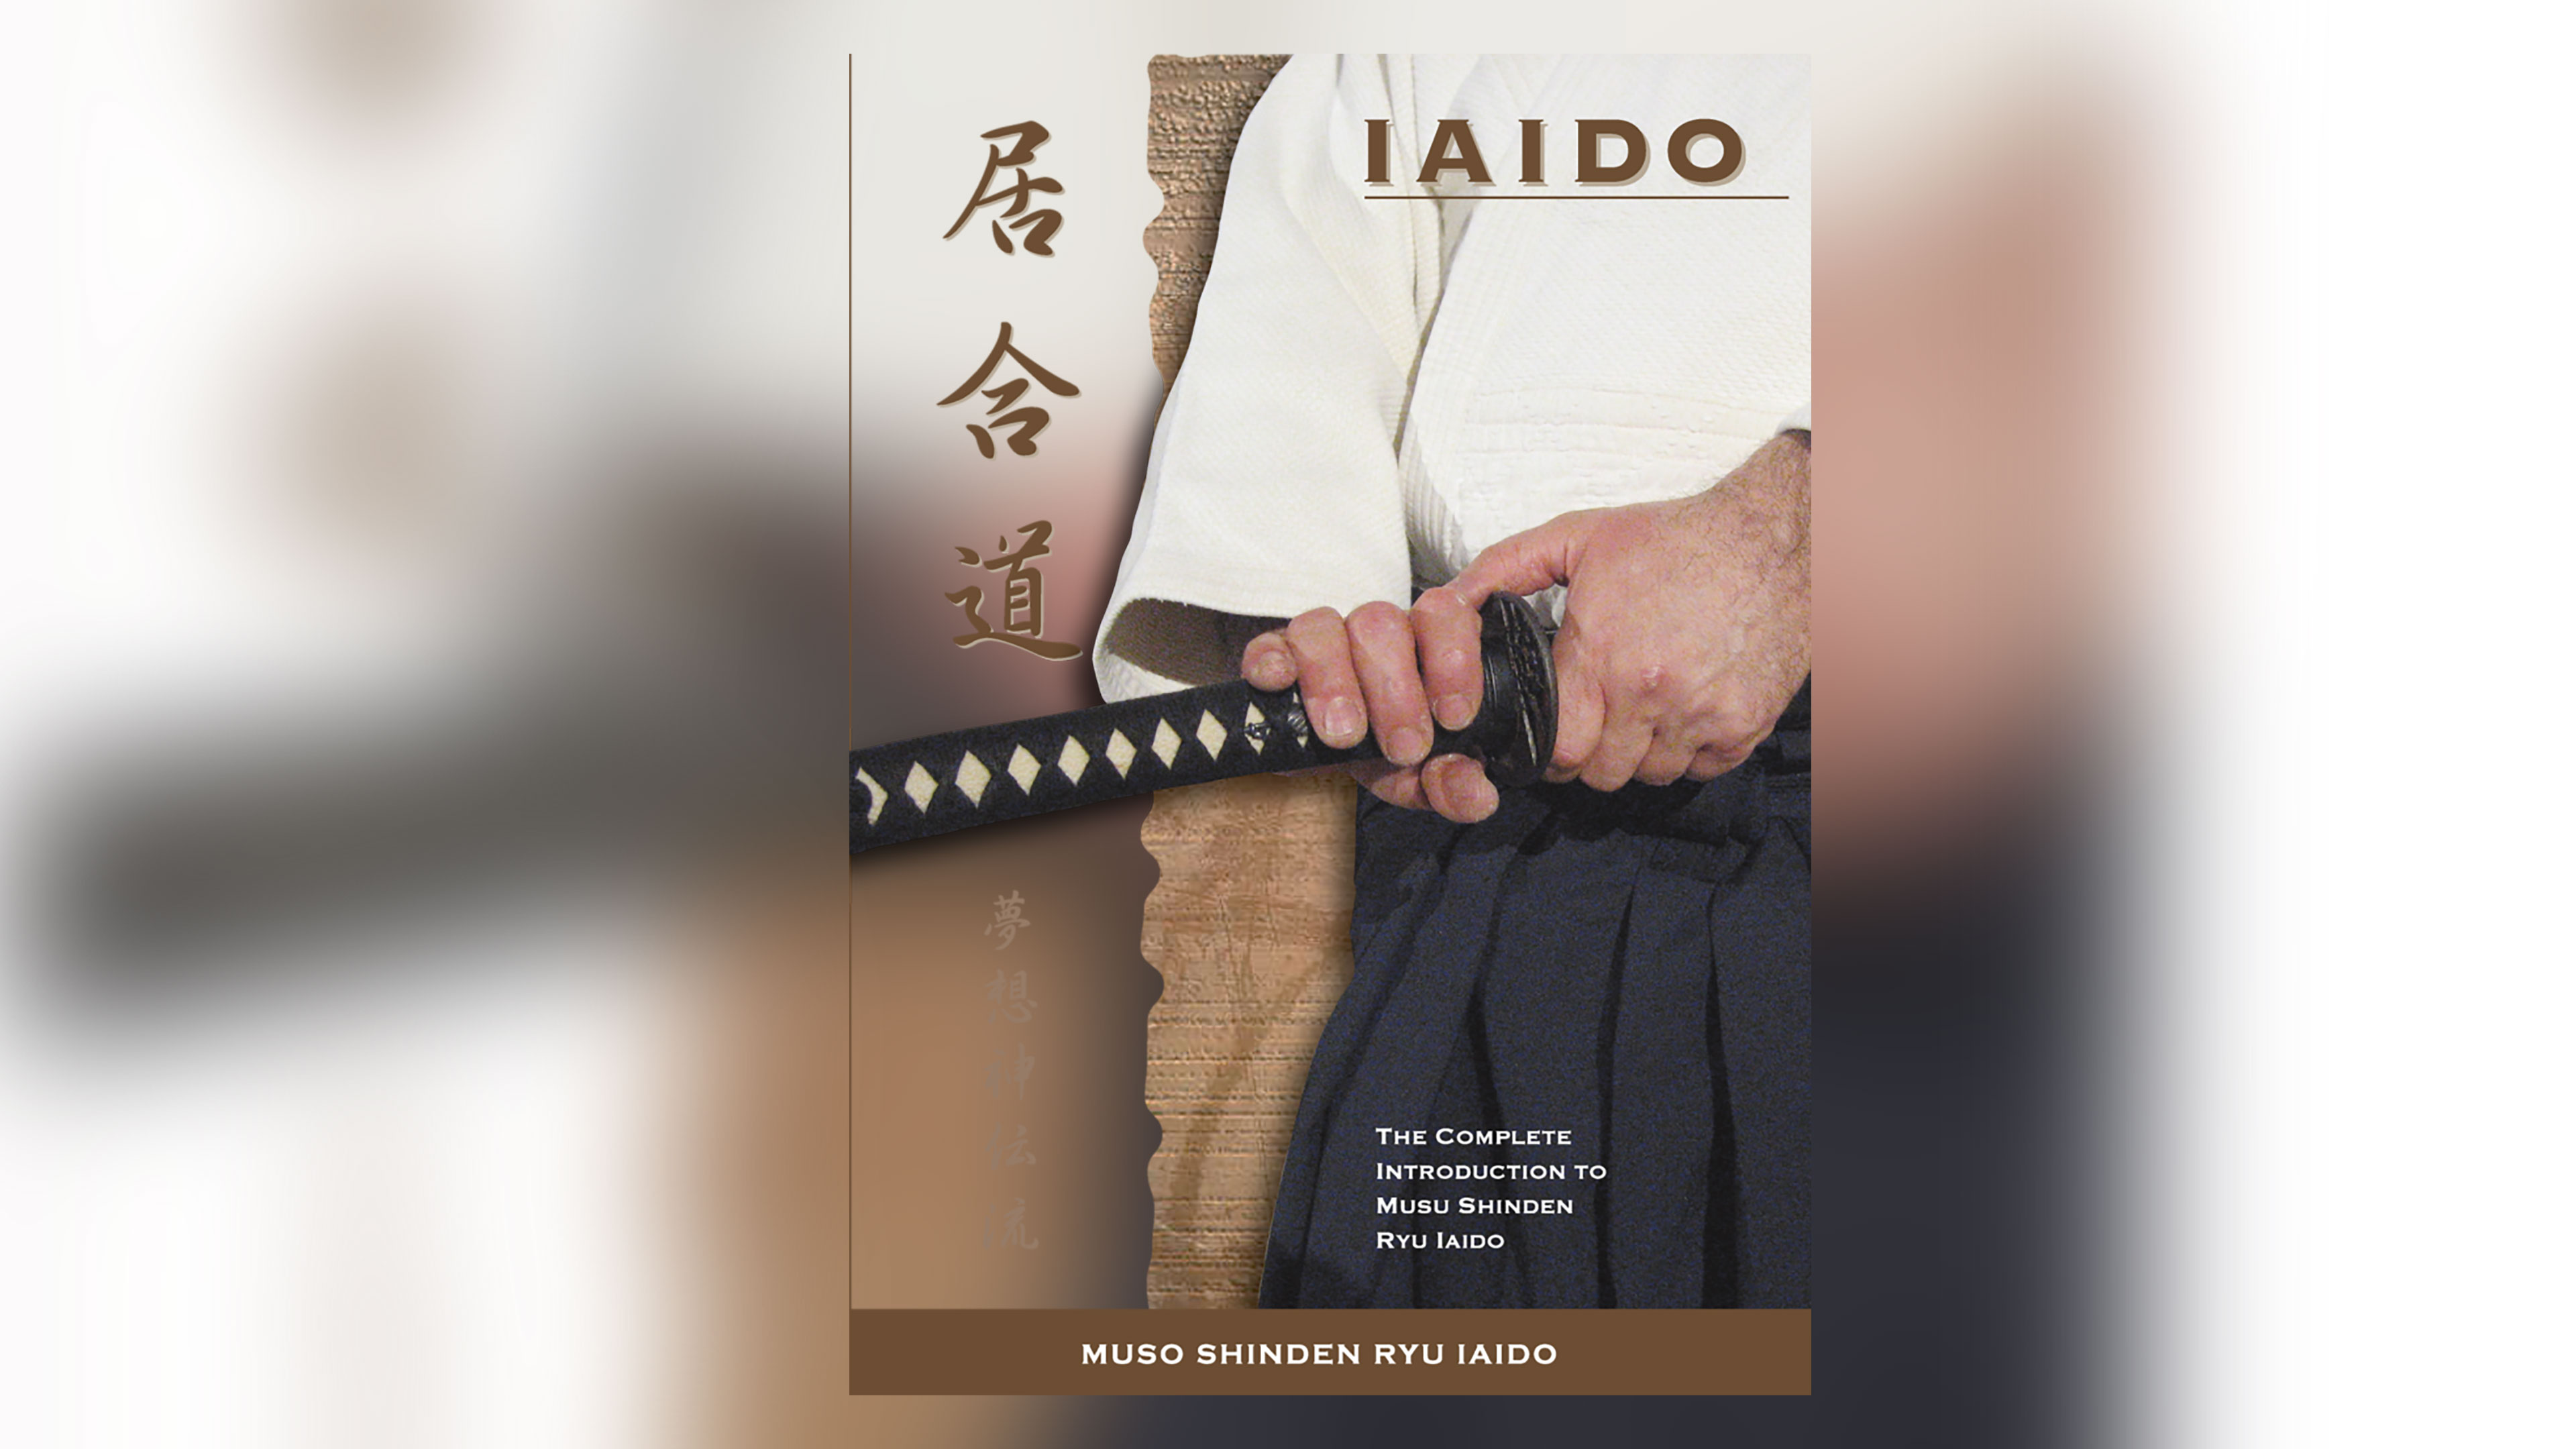 muso shinden ryu iaido